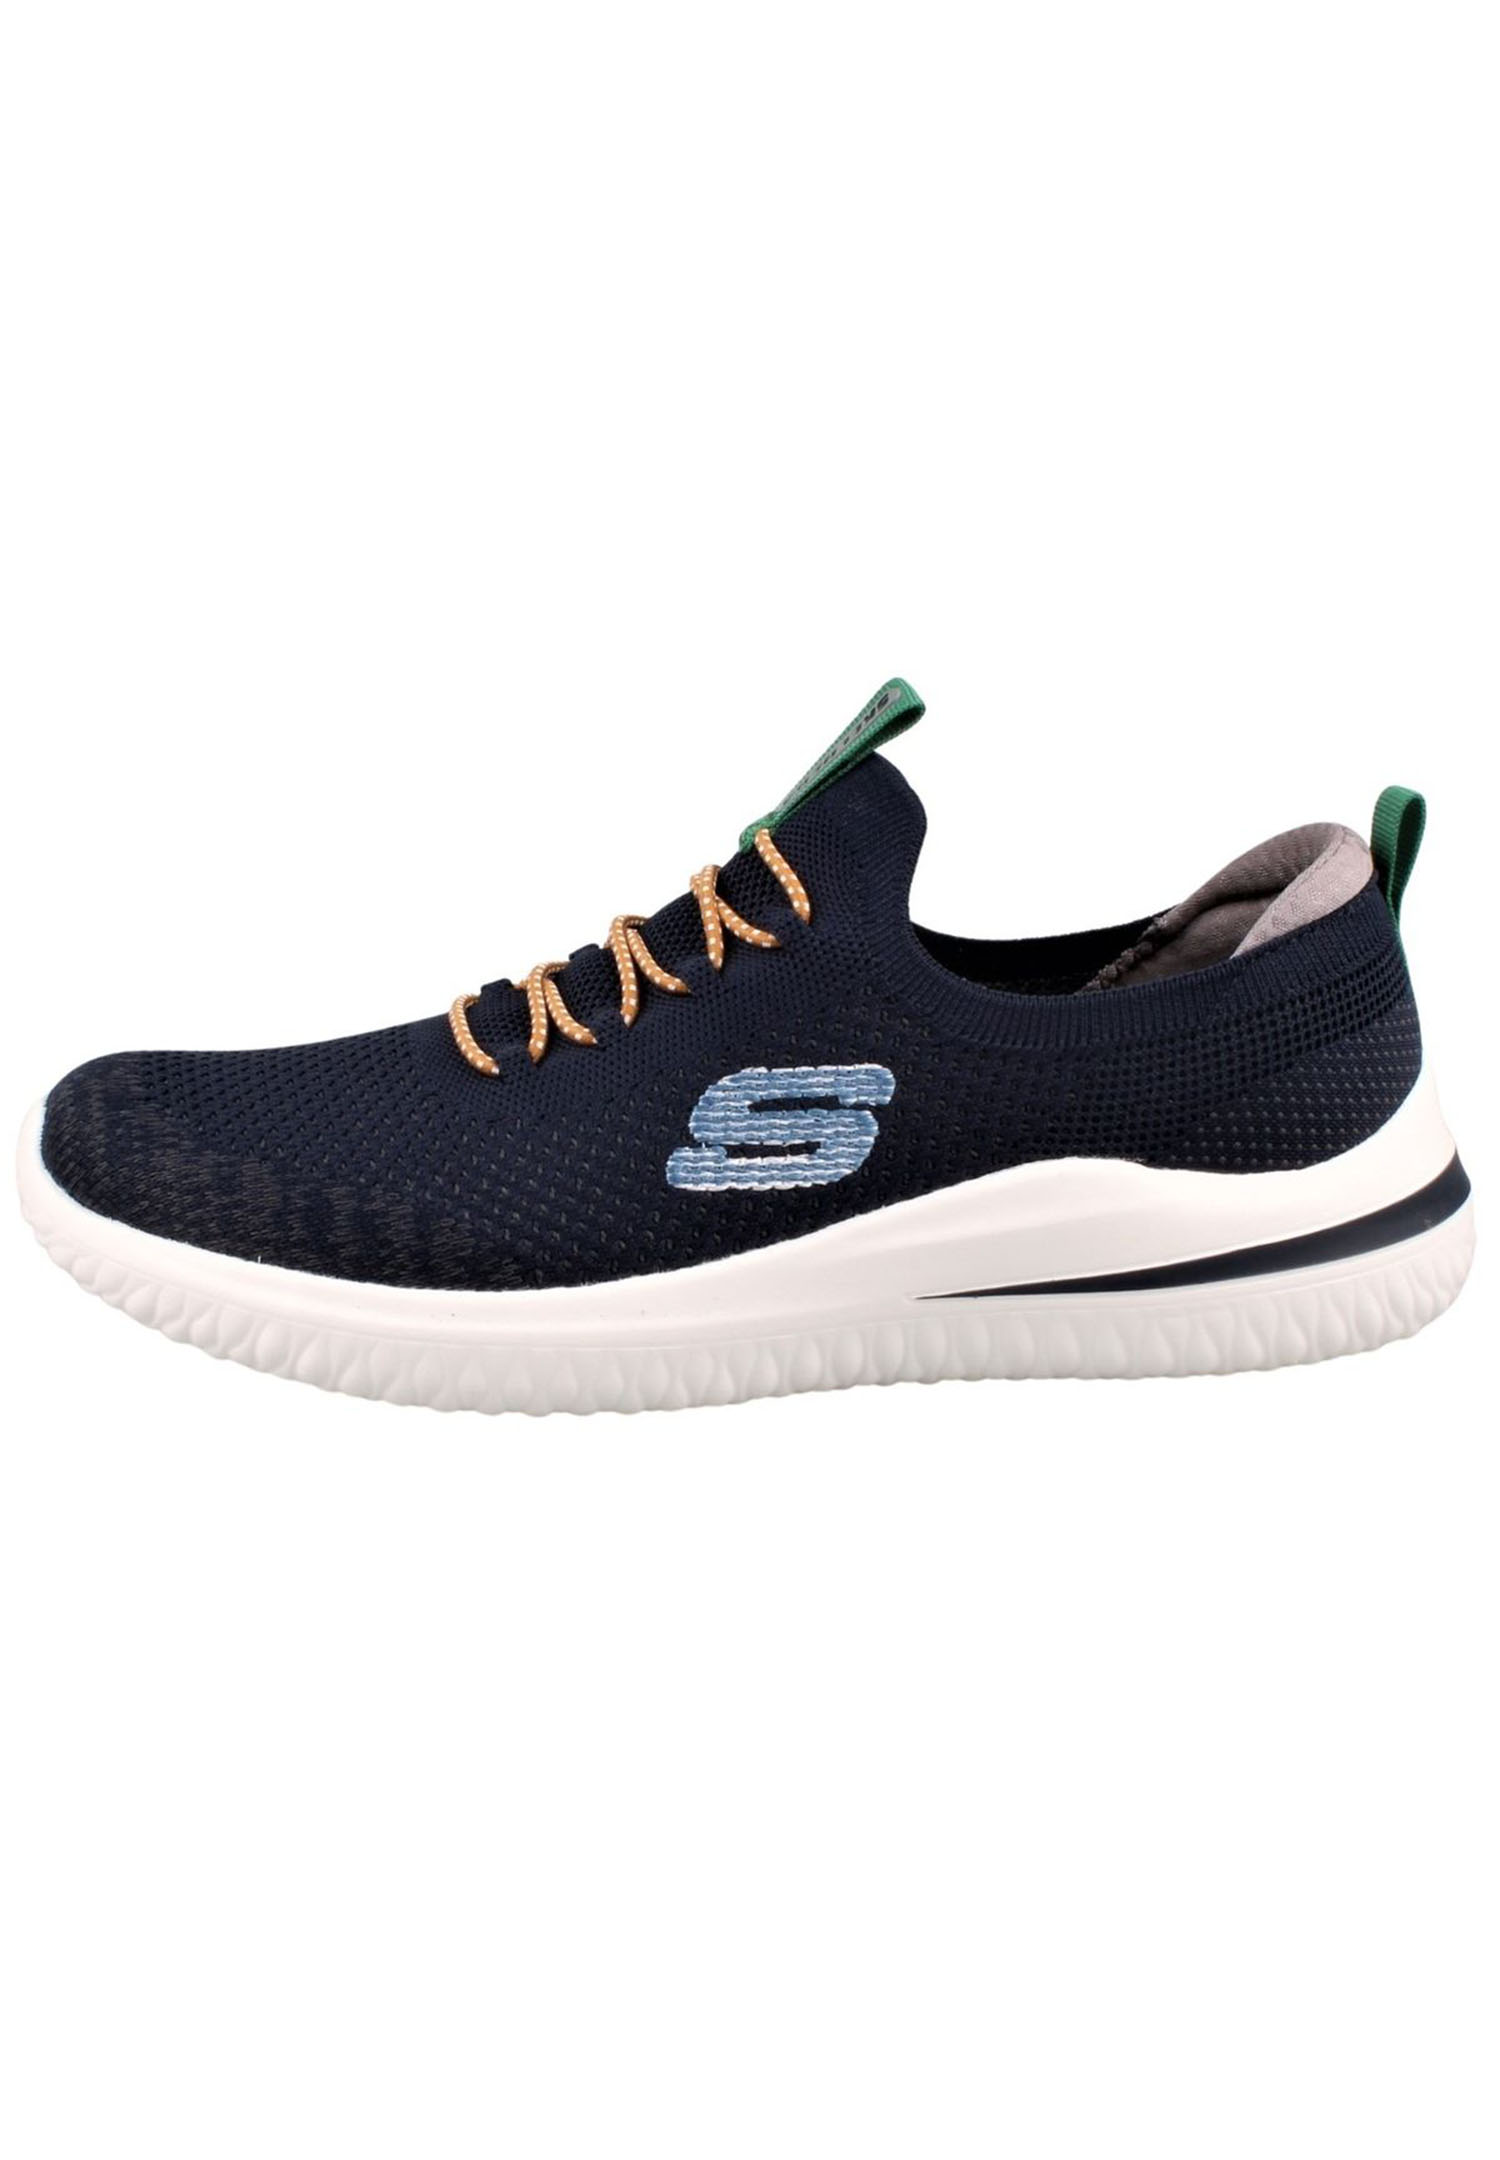 Skechers Delson 3.0 - MENDON Herren Sneaker 210574 NVY navy